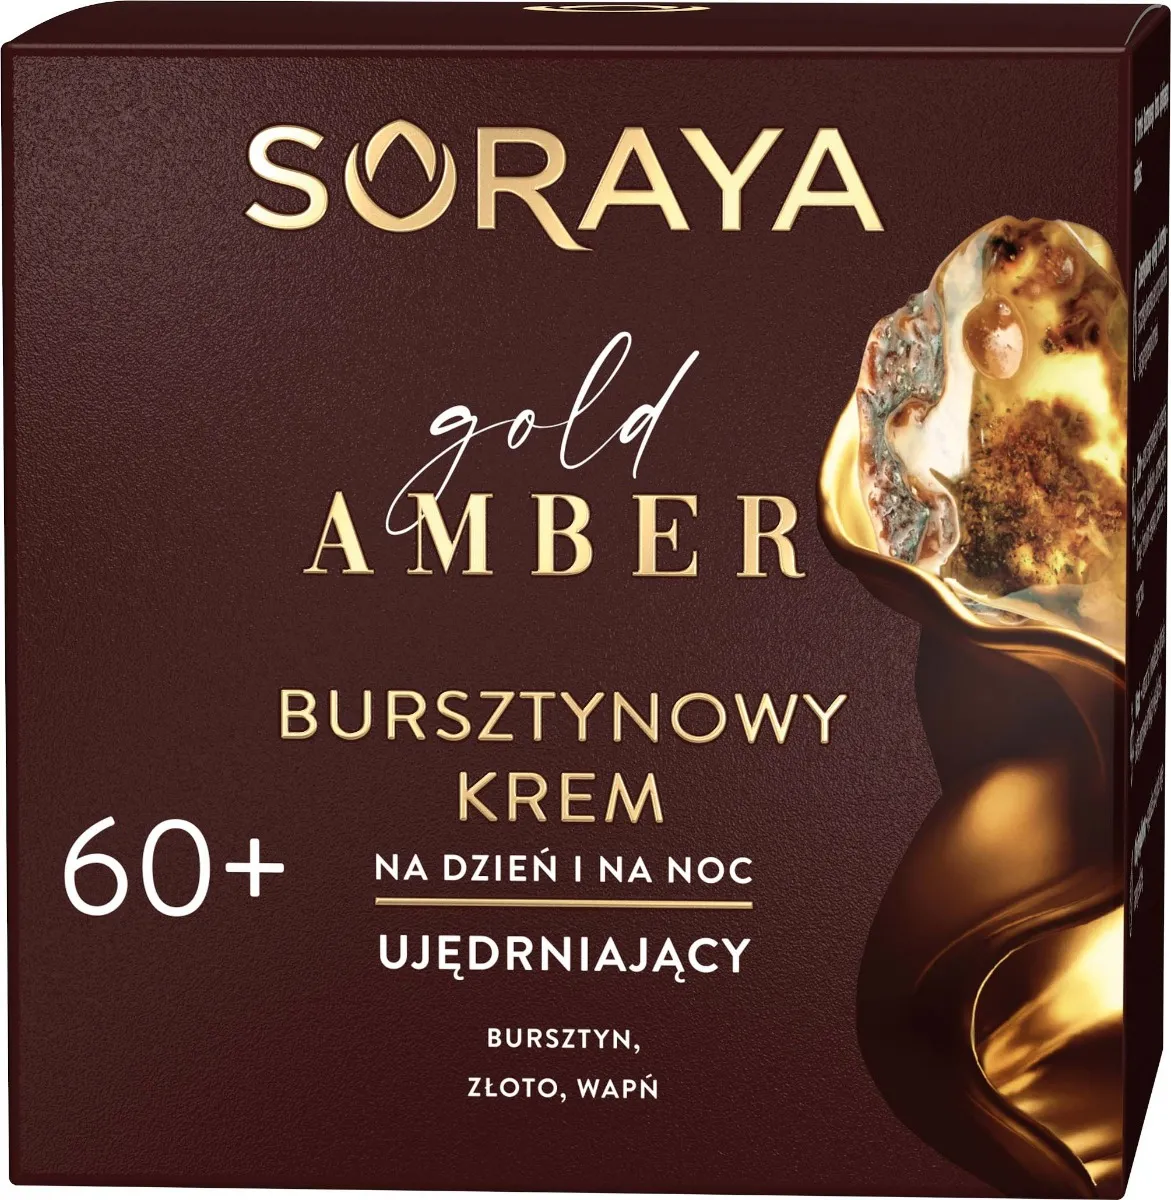 Soraya Gold Amber bursztynowy krem przeciwzmarszczkowy na dzień i na noc 60+, 50 ml